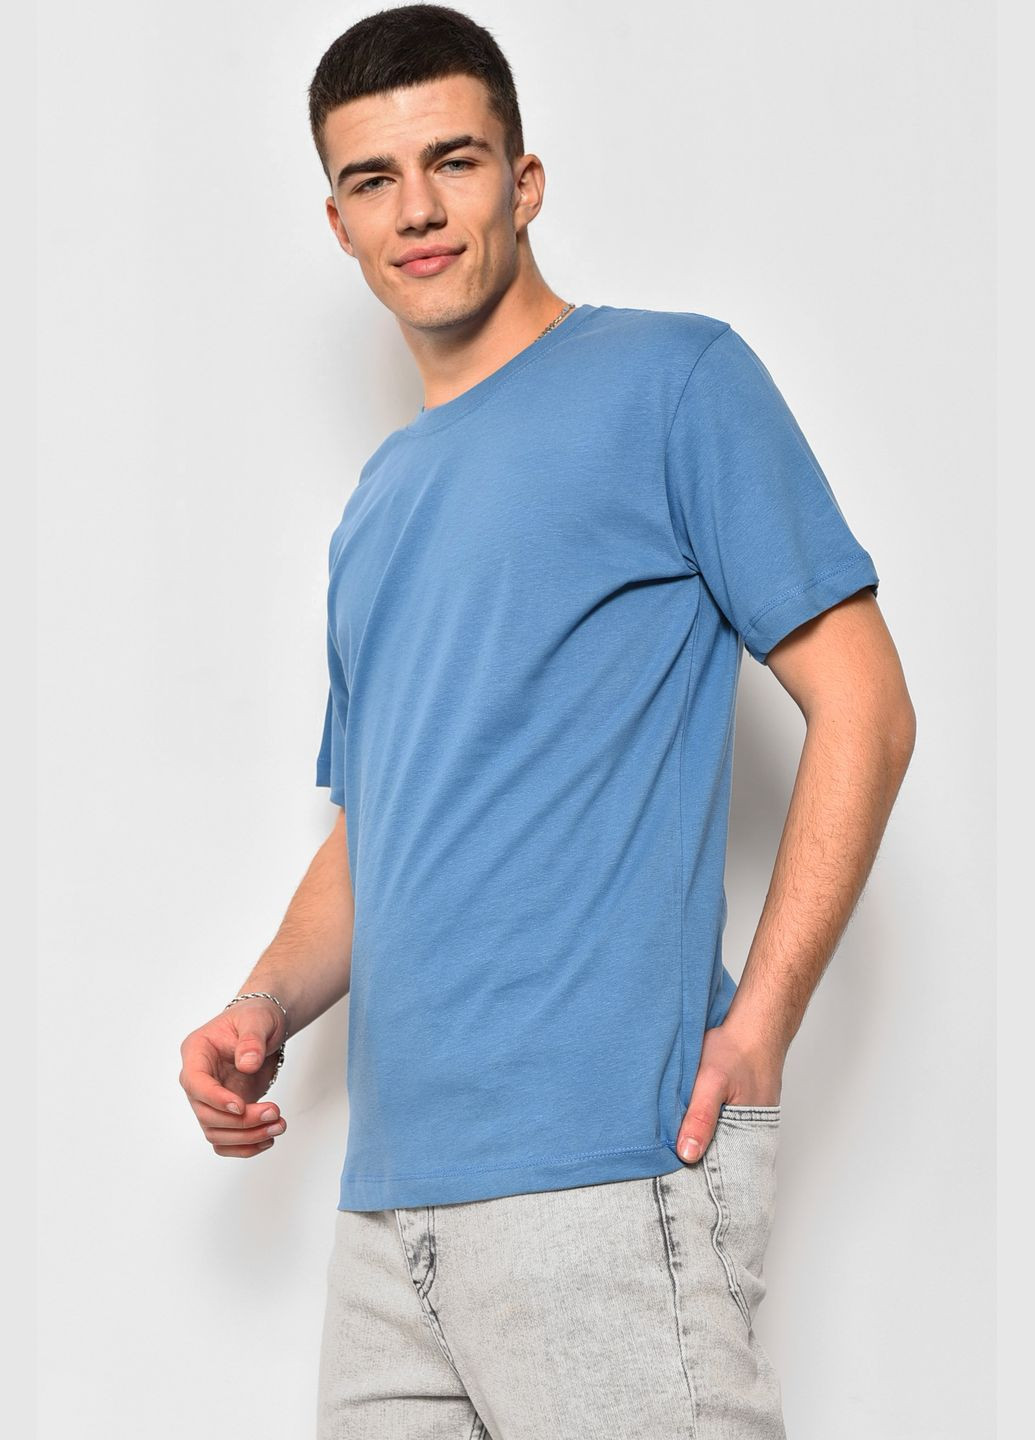 Синяя футболка мужская однотонная синего цвета Let's Shop